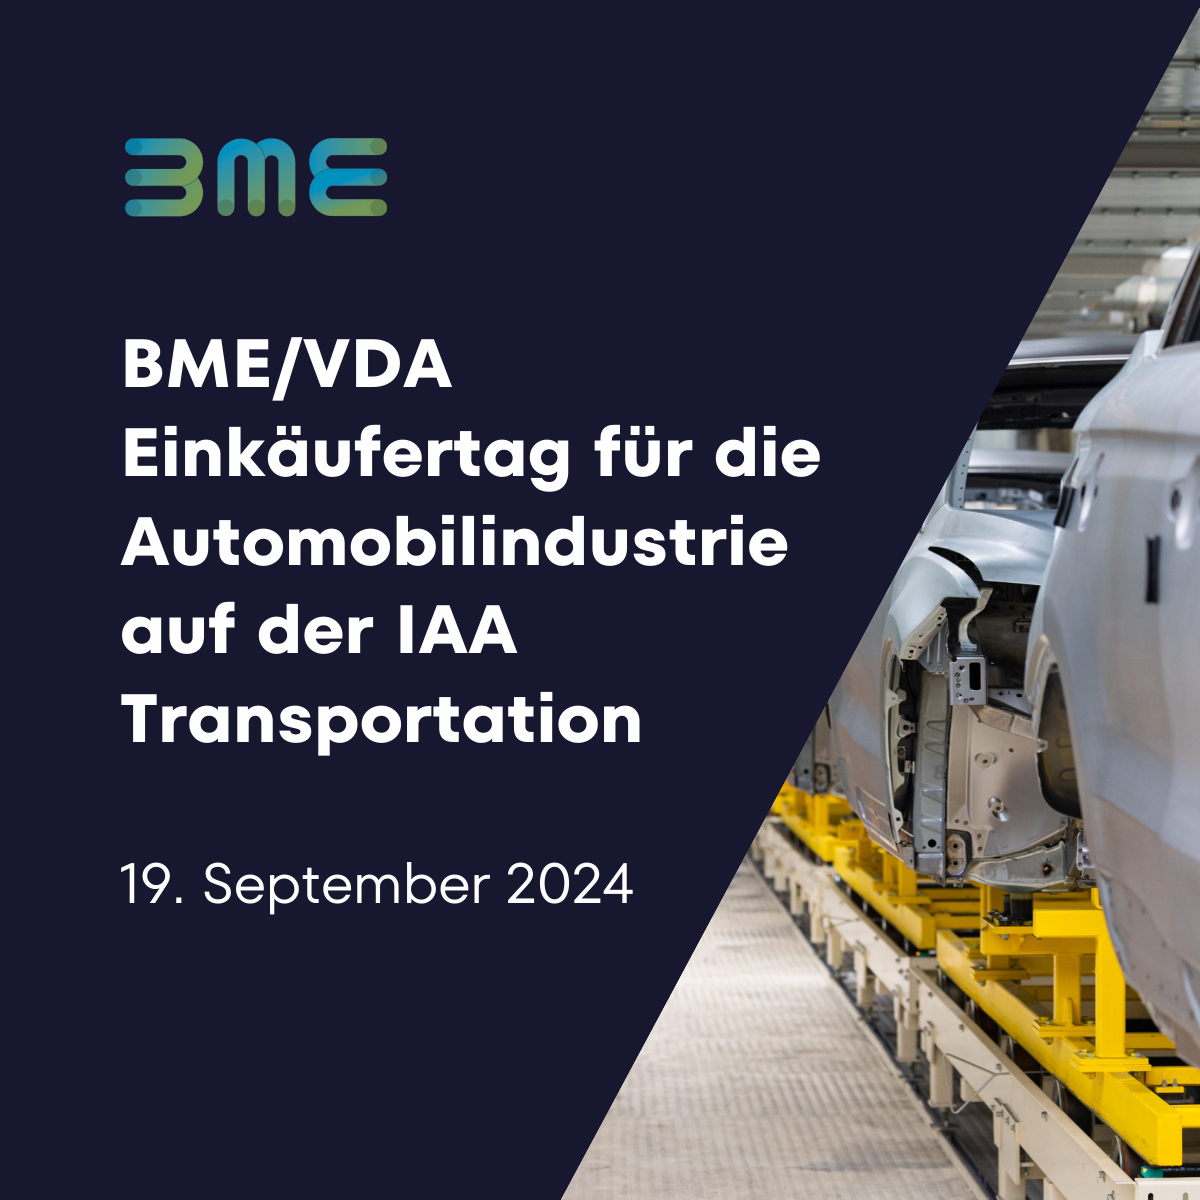 BME/VDA Einkäufertag für die Automobilindustrie auf der IAA Transportation